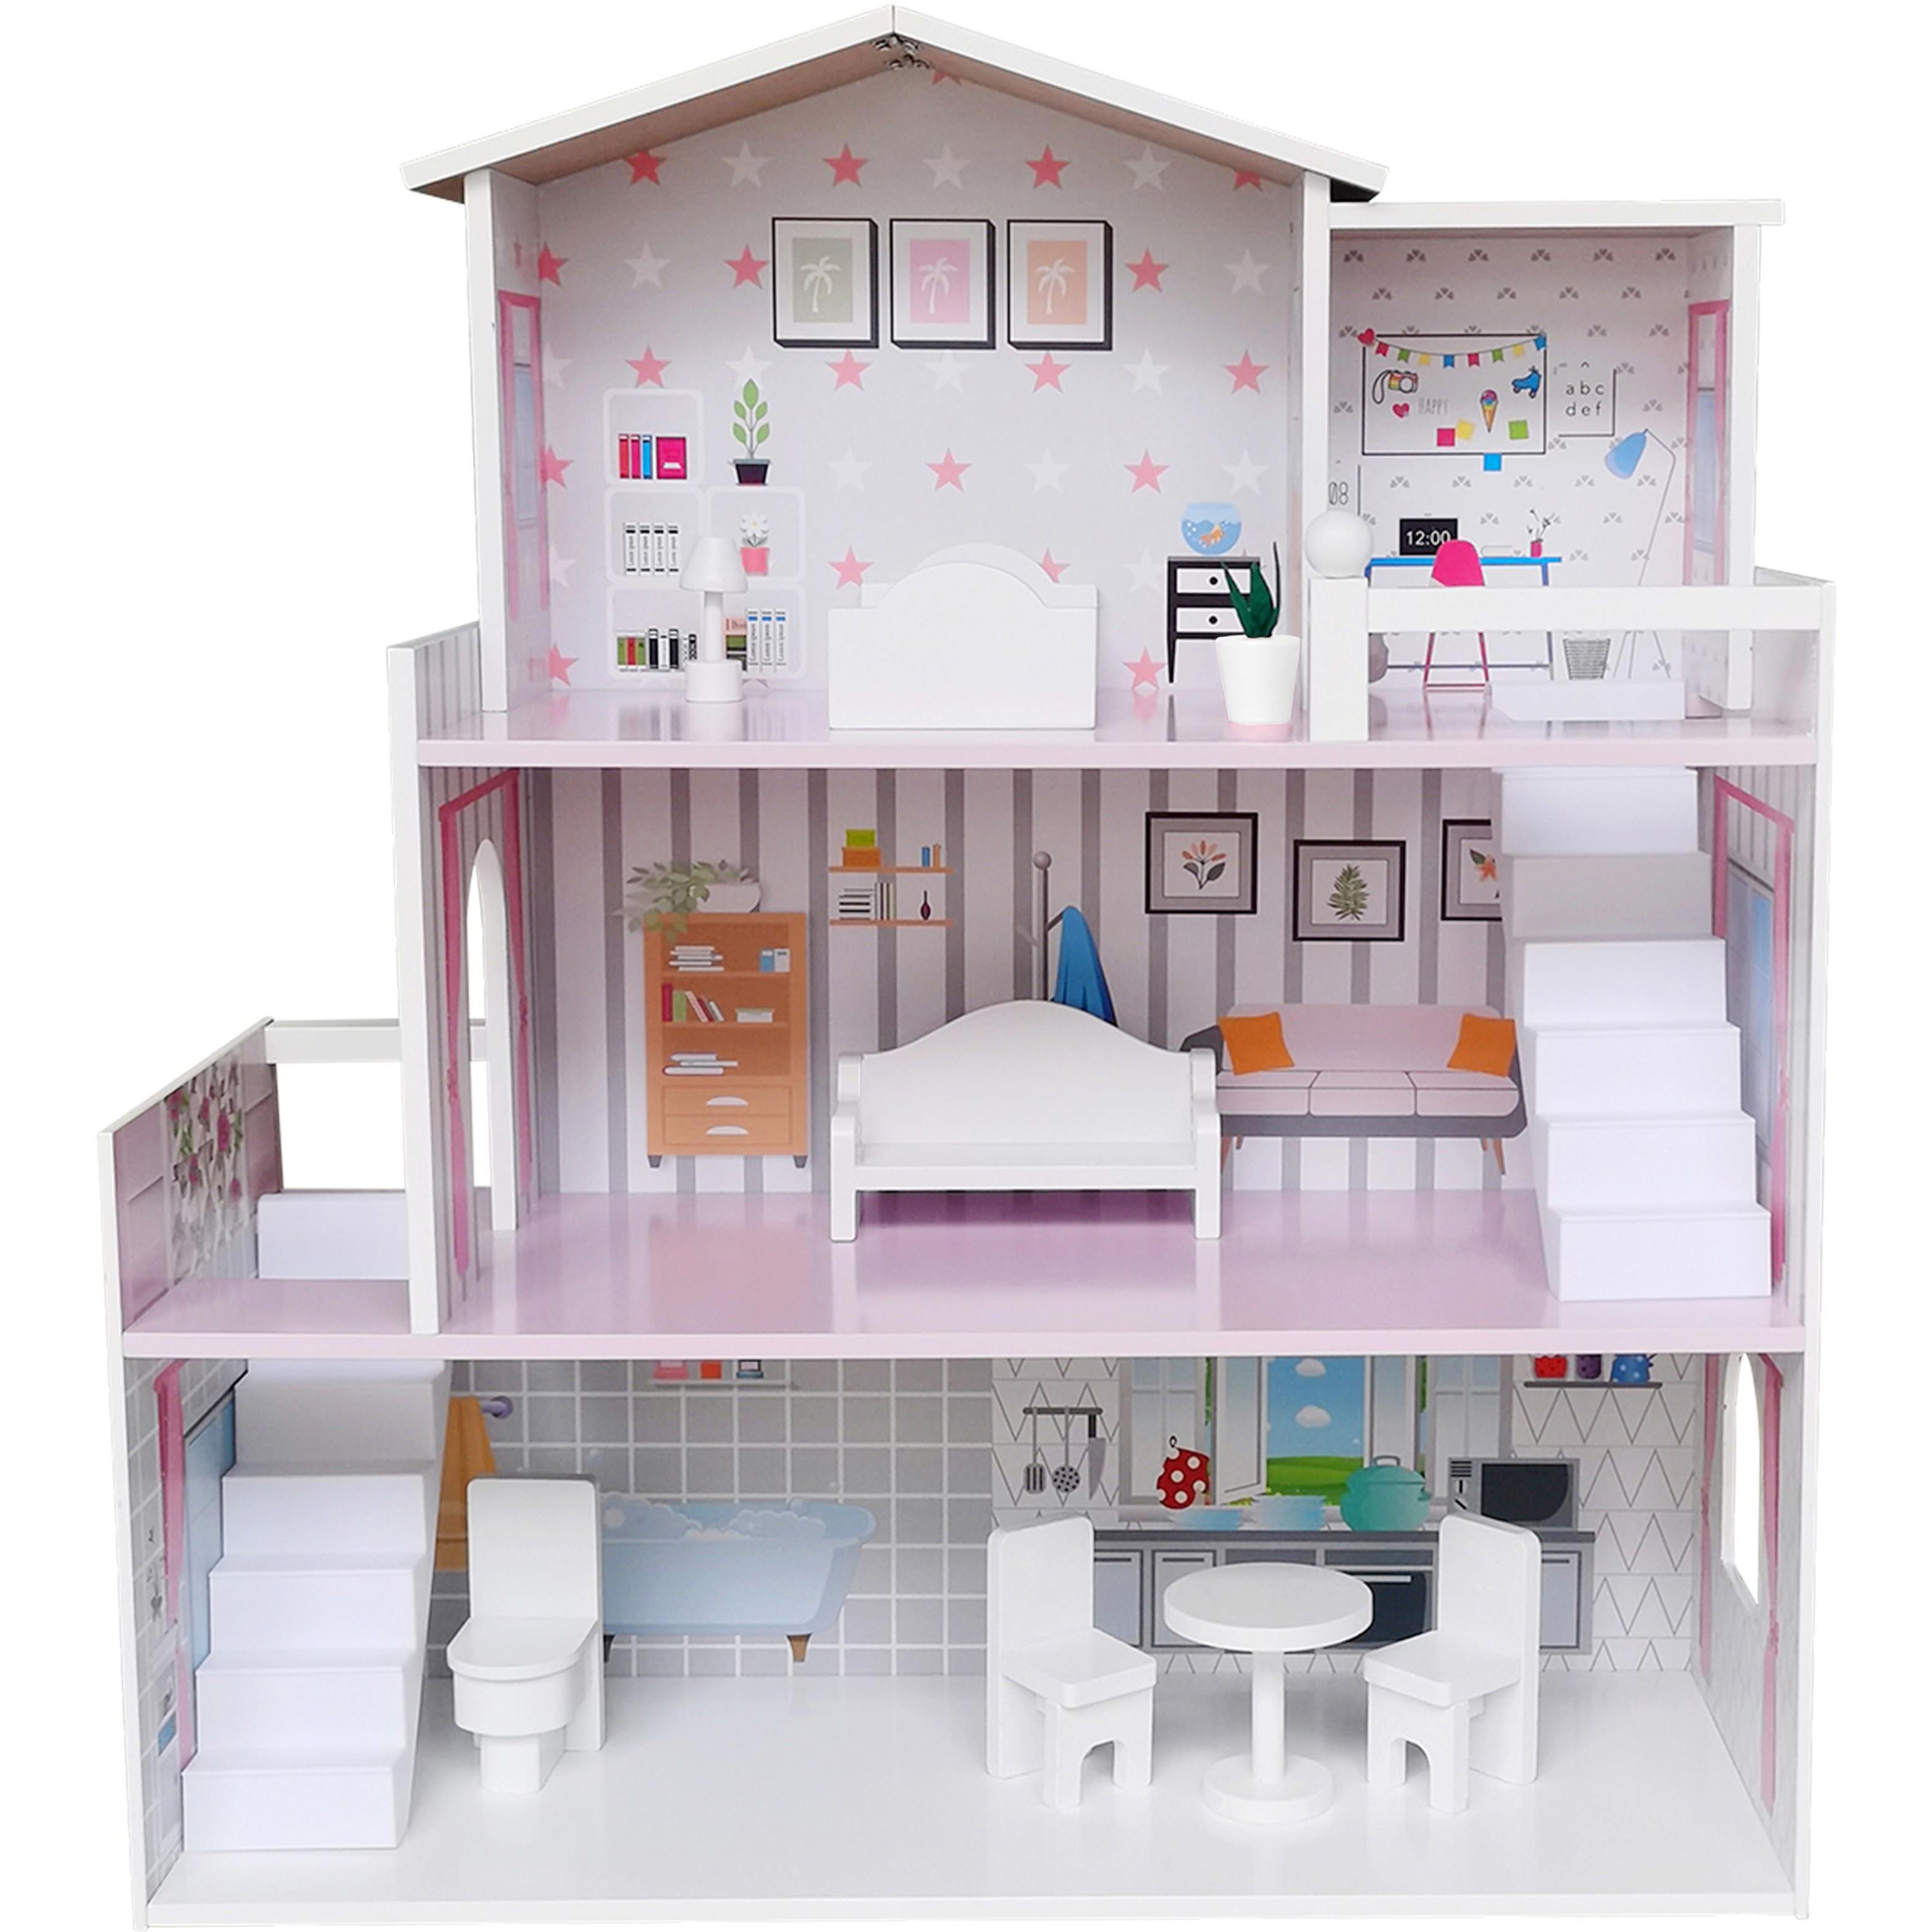 Игрушечный домик деревянный FreeON розовый (47290) - фото 1